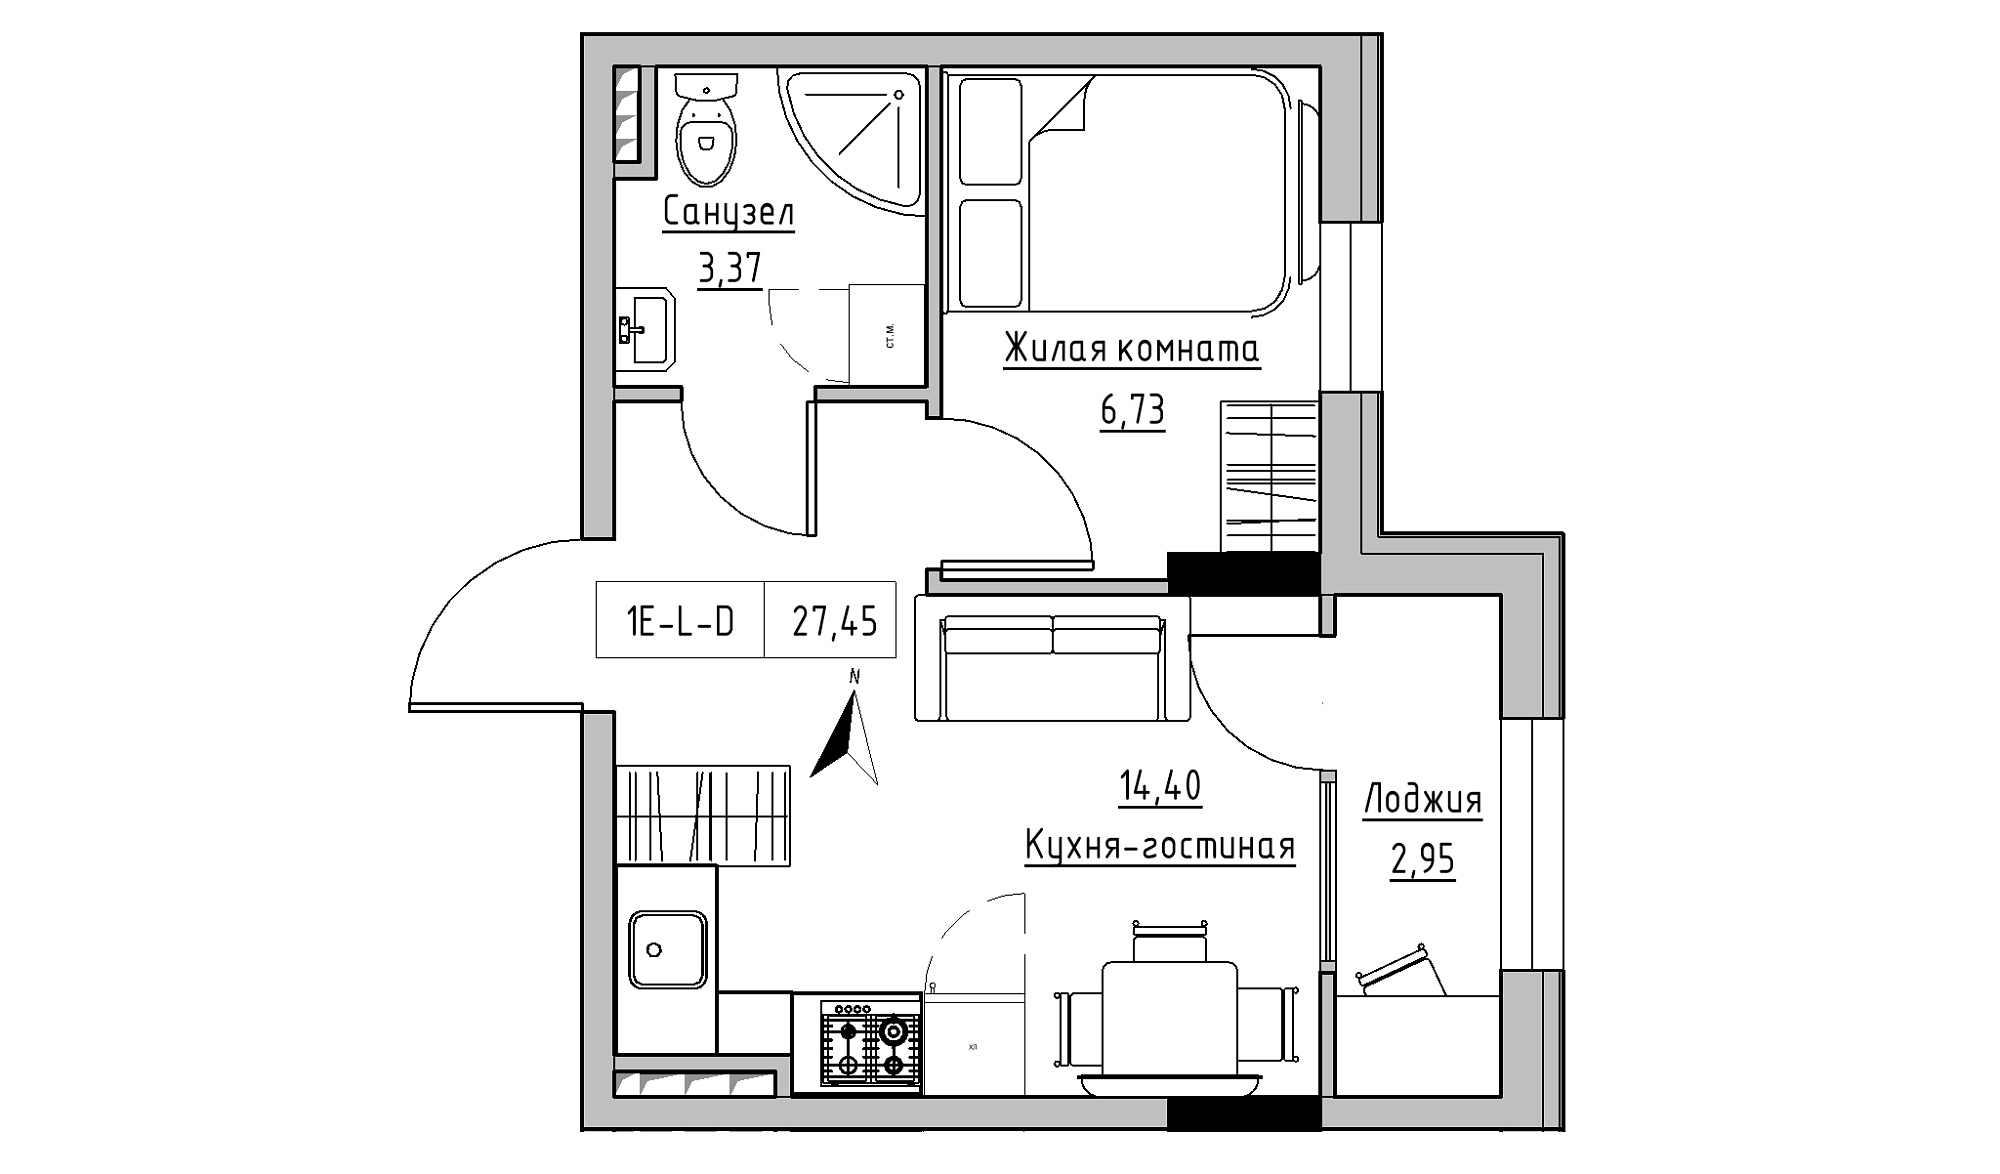 Планировка 1-к квартира площей 27.45м2, KS-025-03/0001.